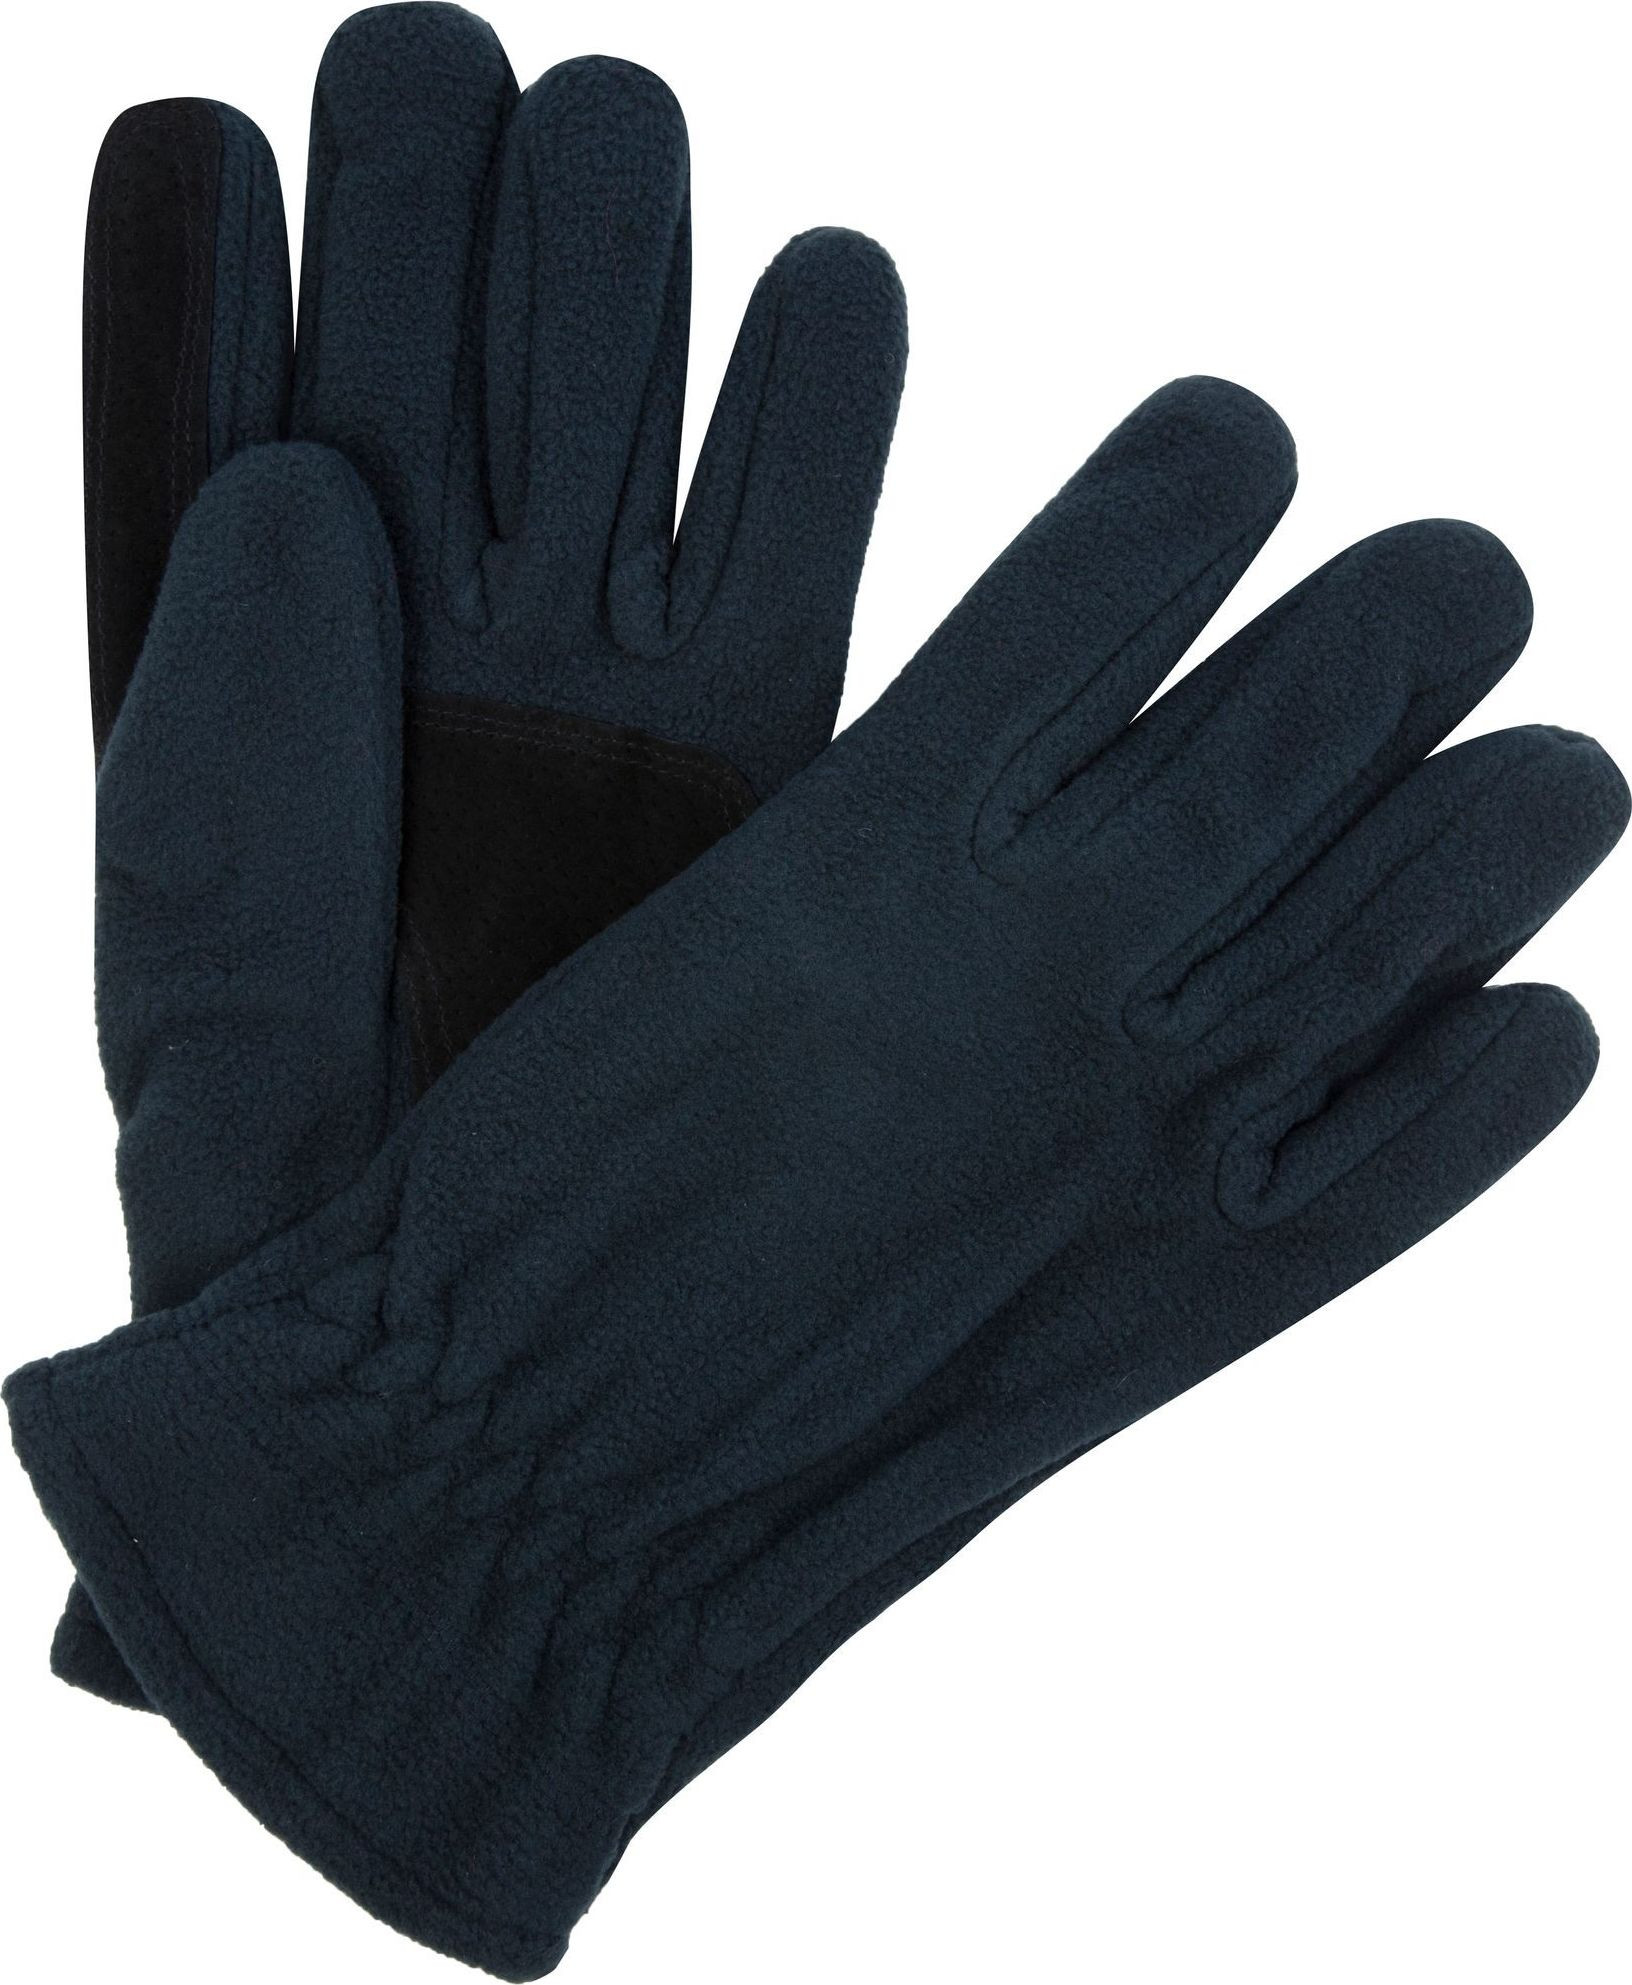 Pánské fleecové rukavice Regatta RMG014 Kingsdale Glove Tmavě modré Modrá S-M